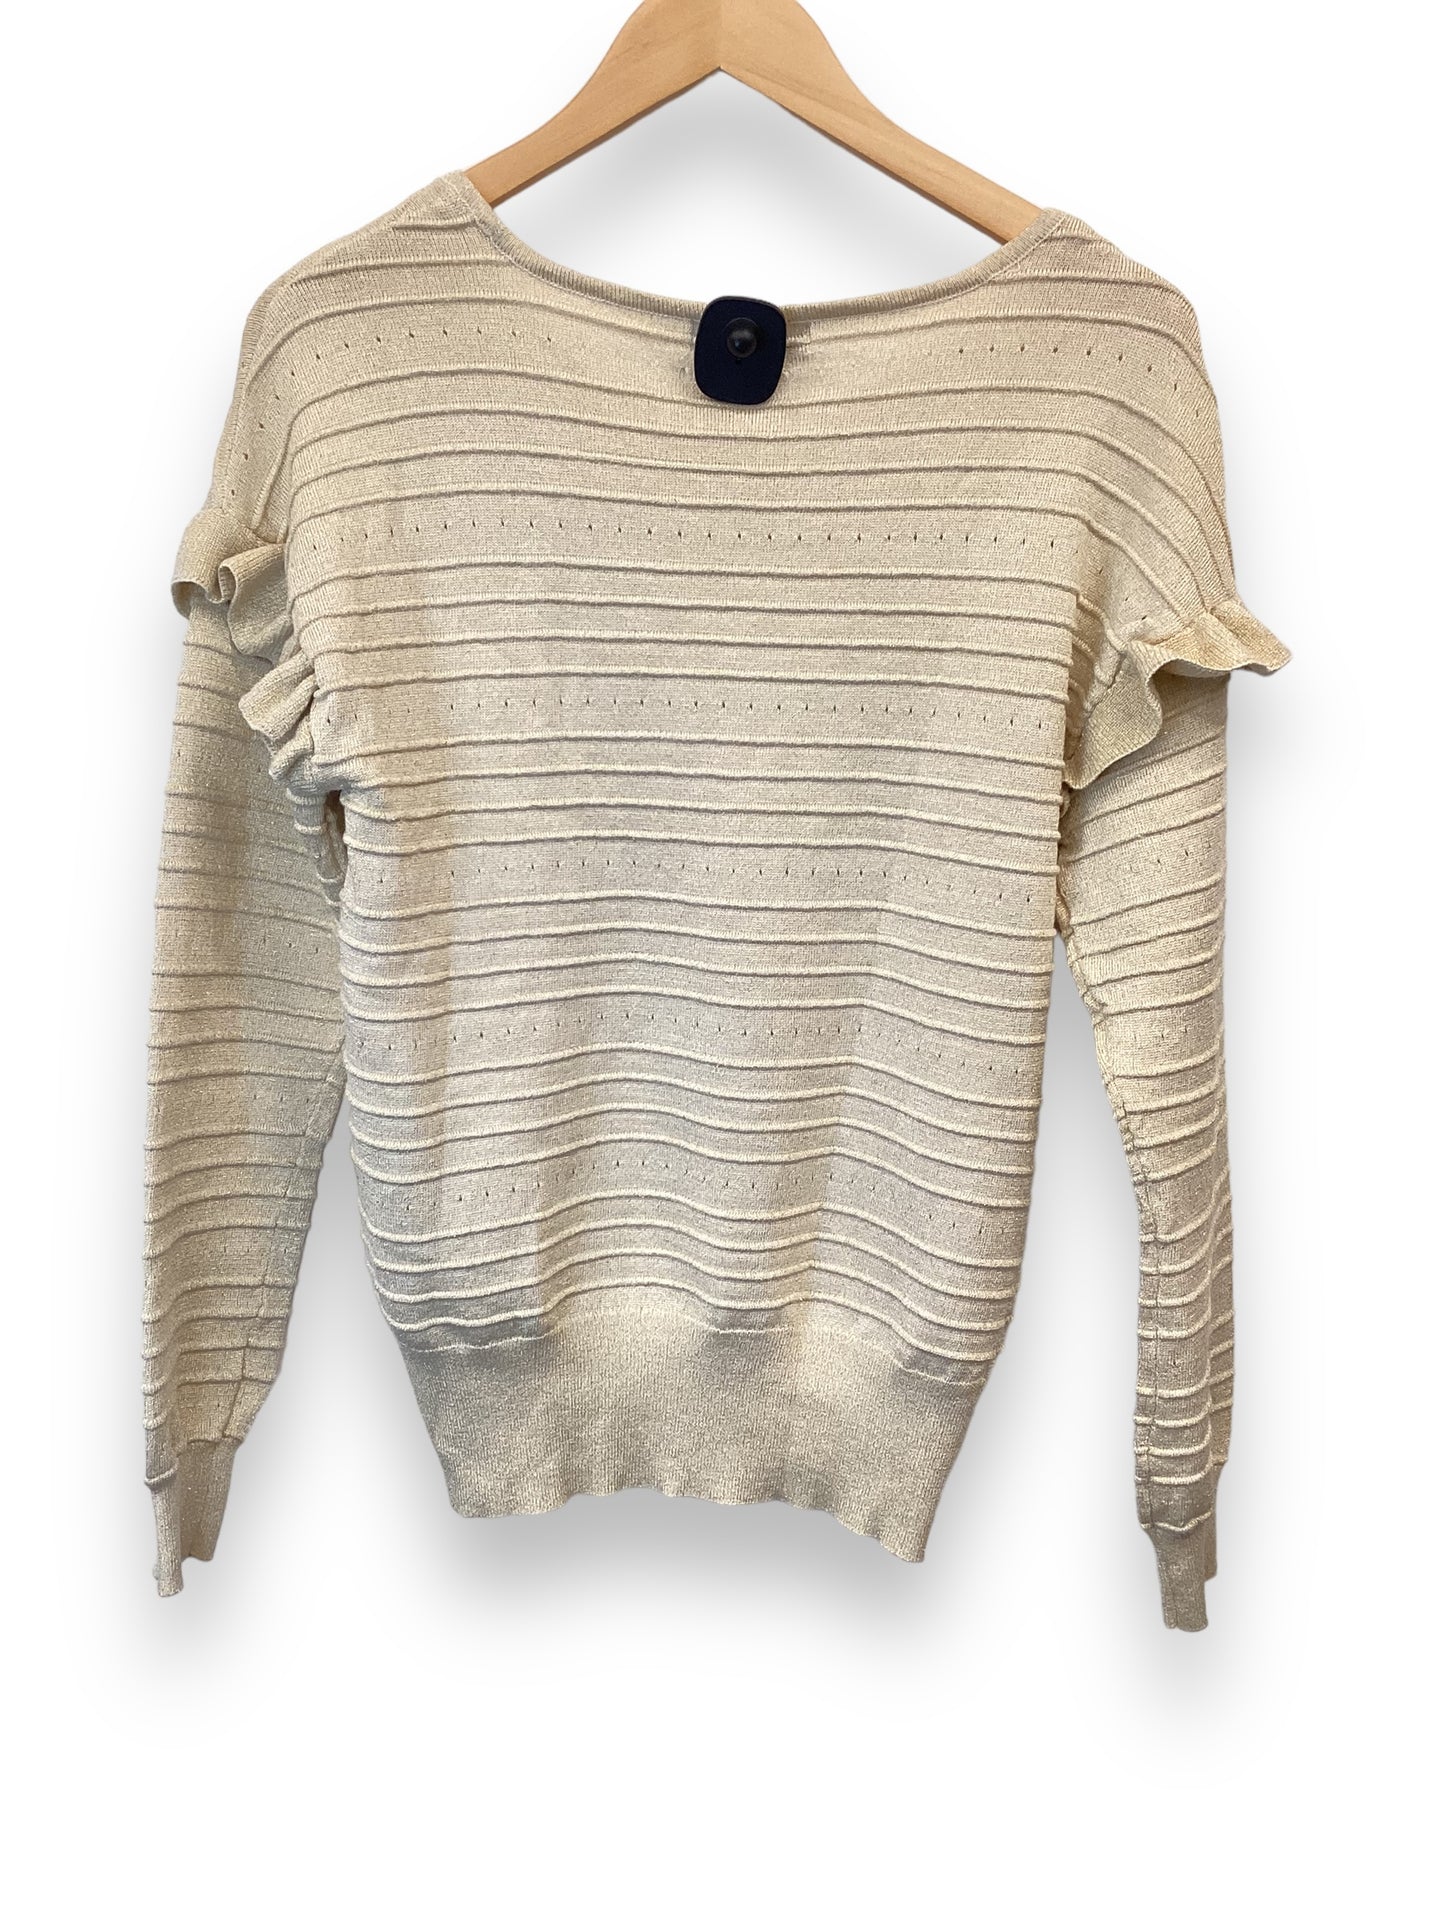 Sweater By Liz Claiborne  Size: Xs